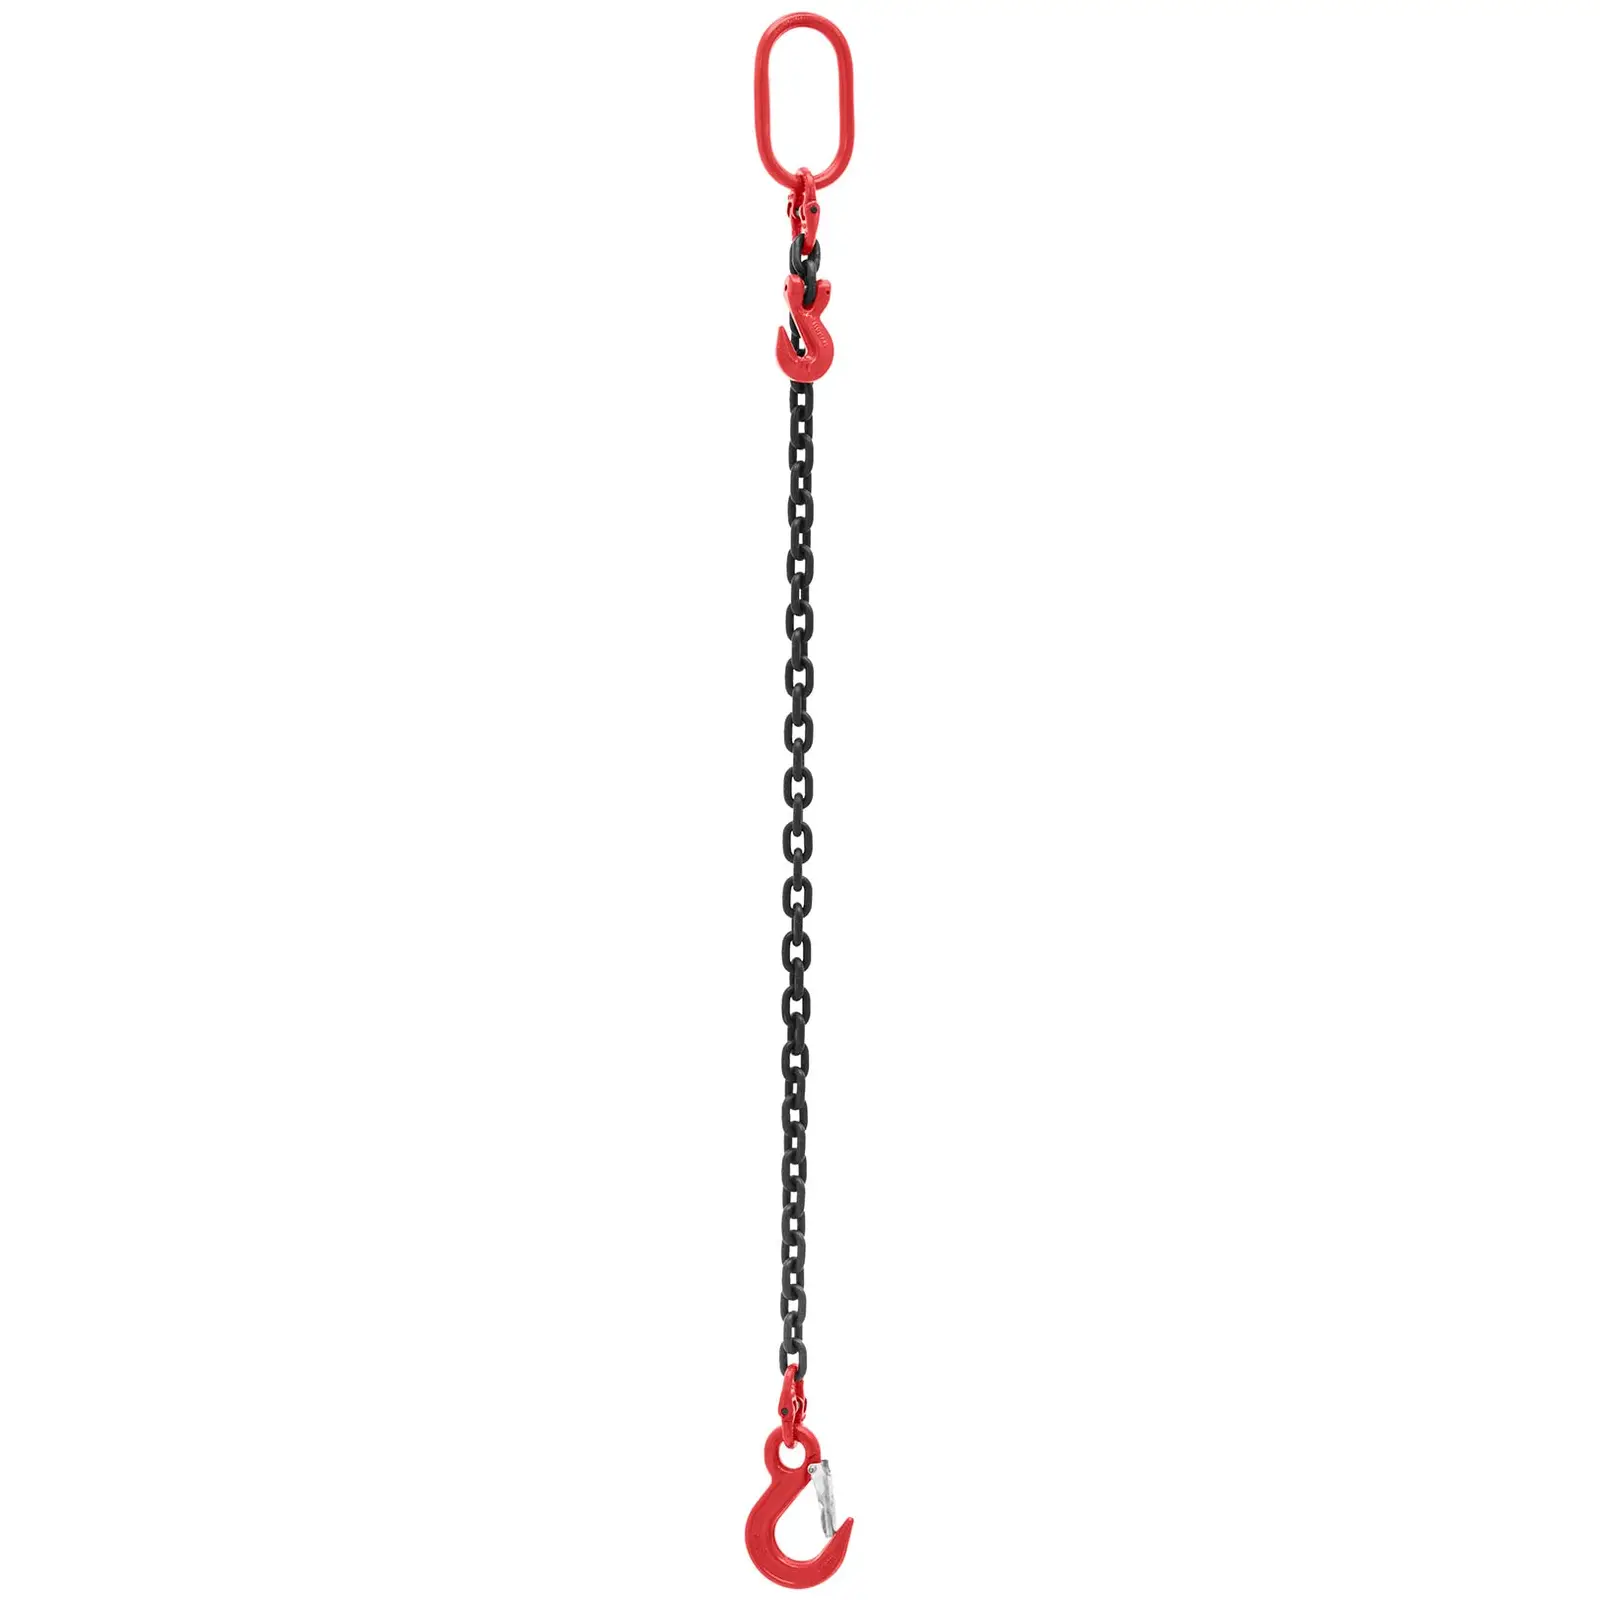 Imbracatura a catena - 2.000 kg - 1 m - Nera, bianca - Accorciabile